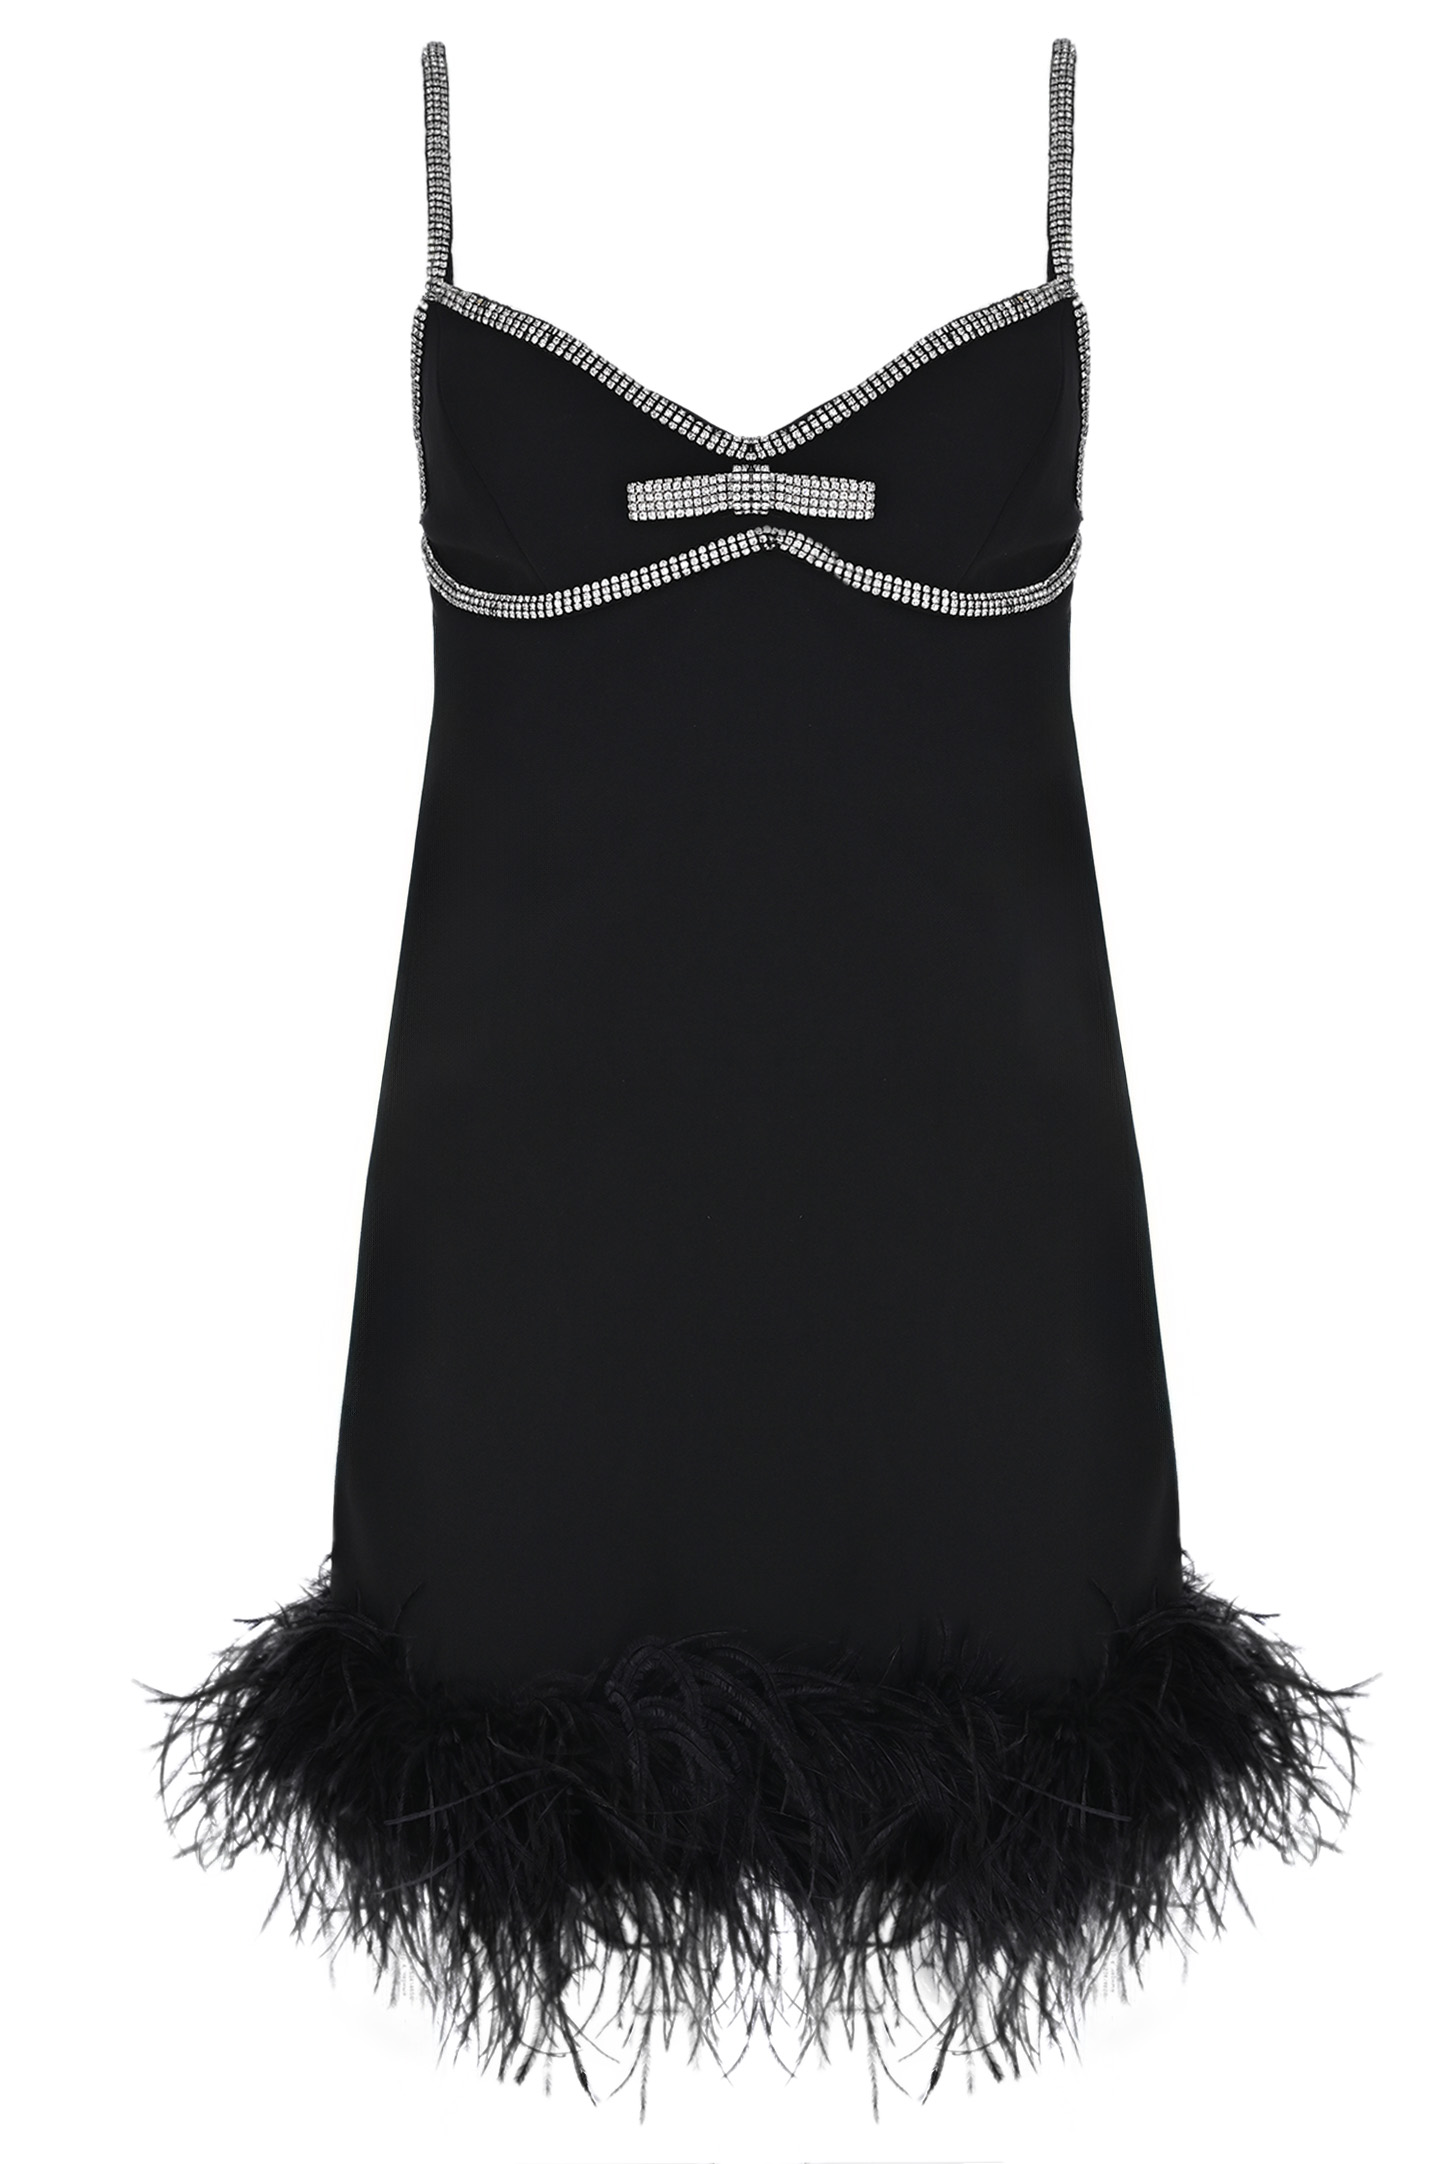 Платье SELF PORTRAIT RS24146SB, цвет: Черный, Женский